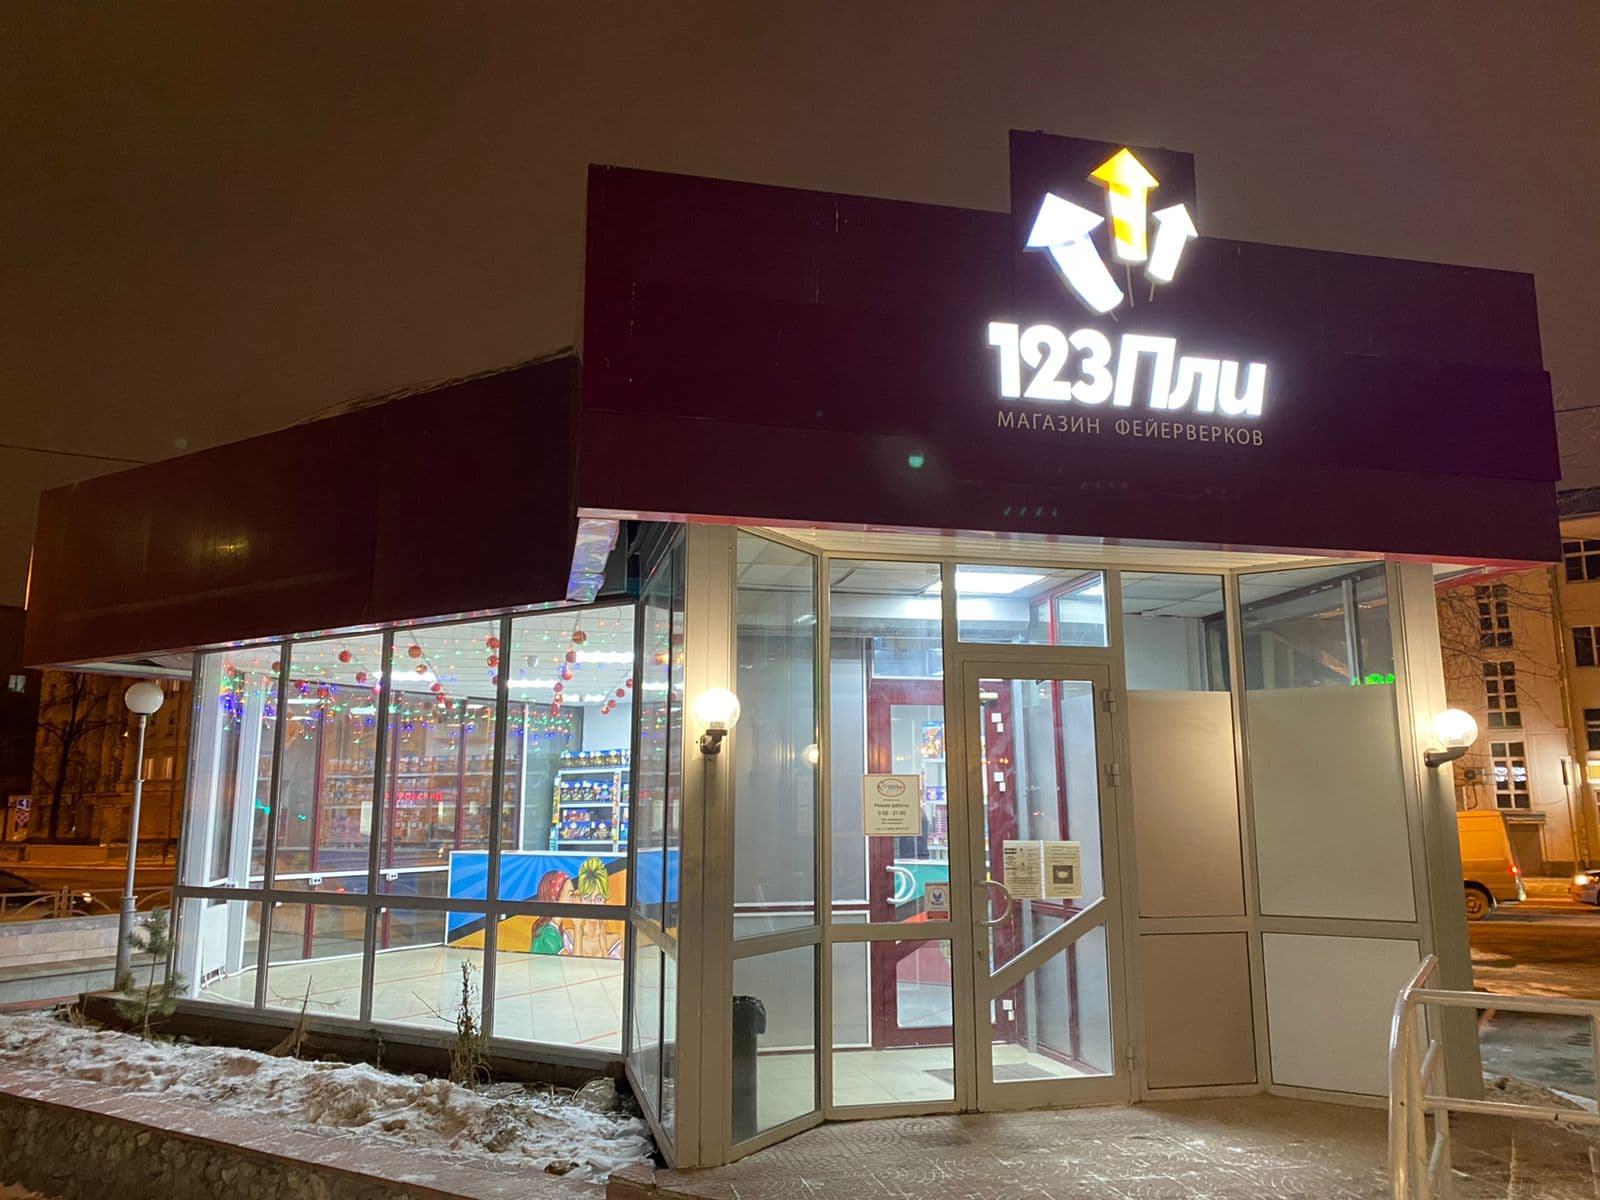 Адреса магазинов фейерверков в Екатеринбурге